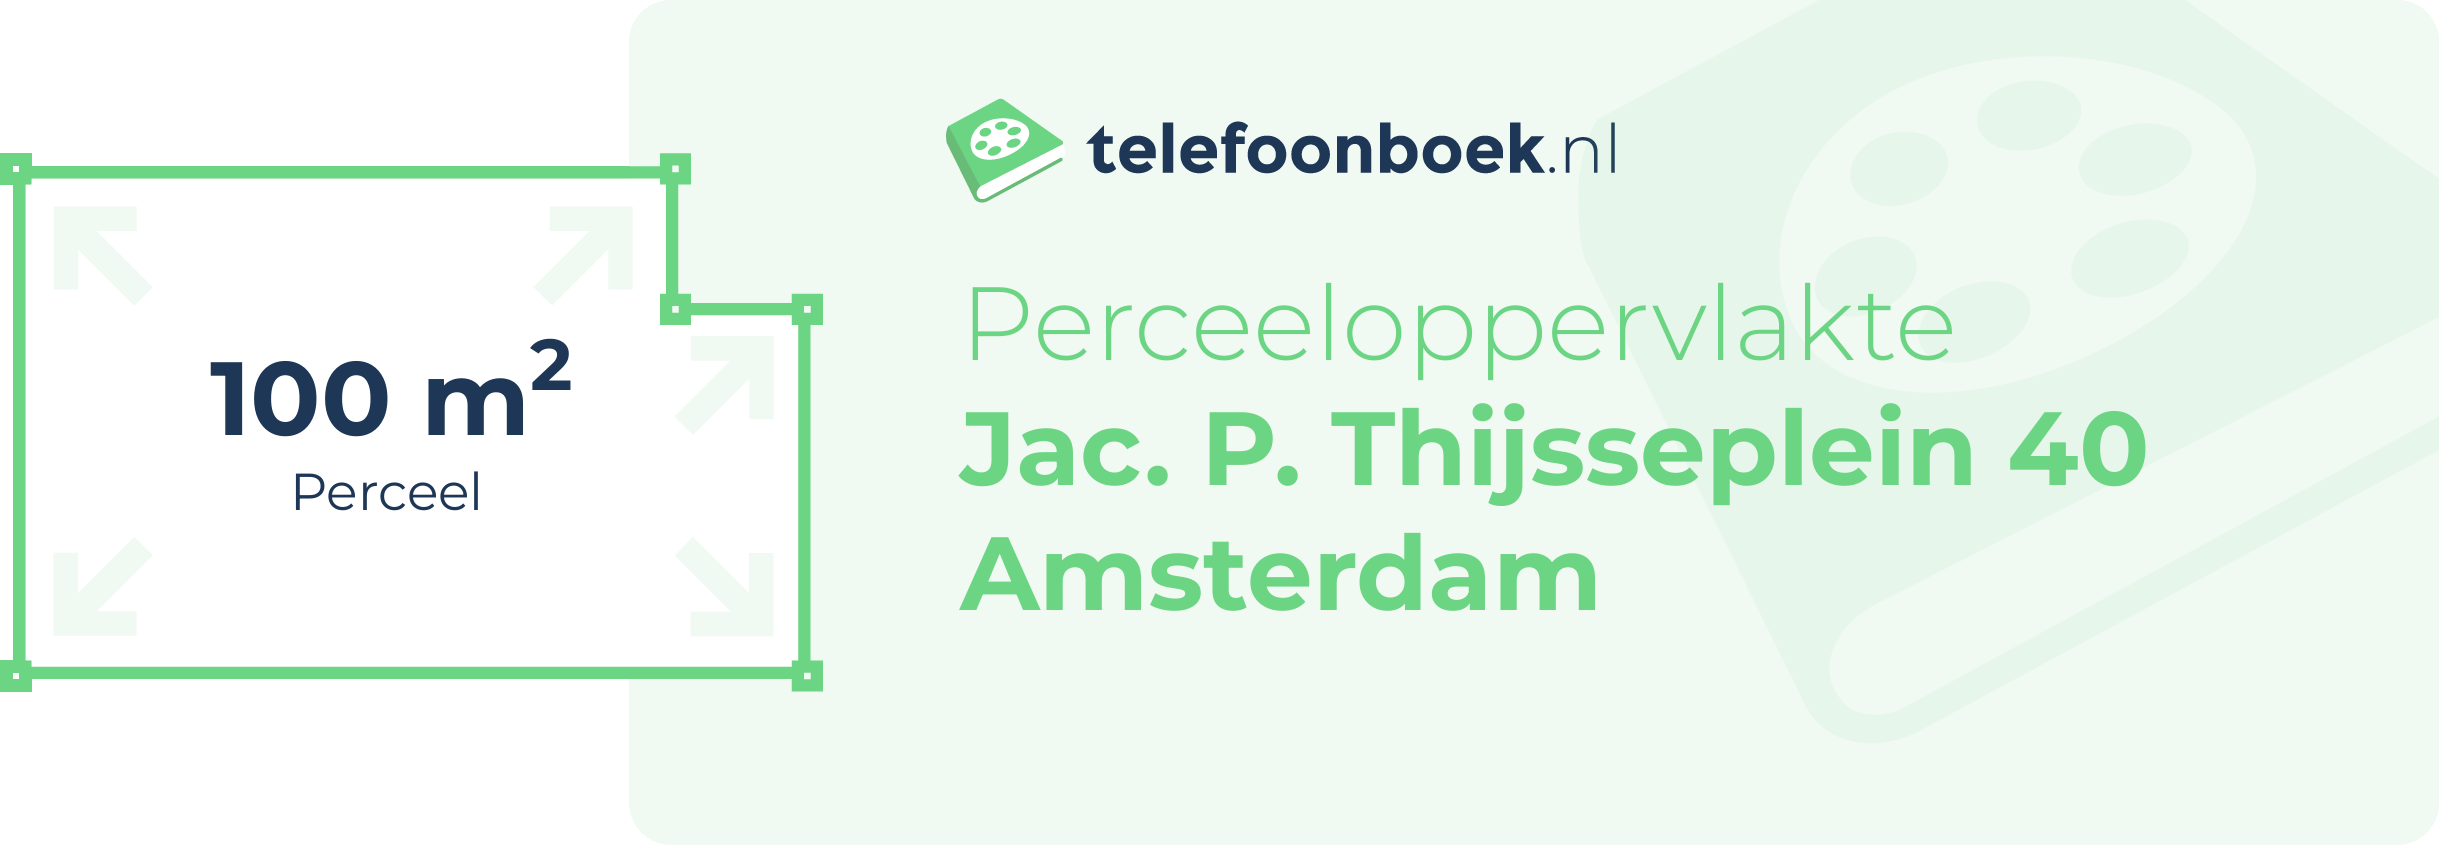 Perceeloppervlakte Jac. P. Thijsseplein 40 Amsterdam